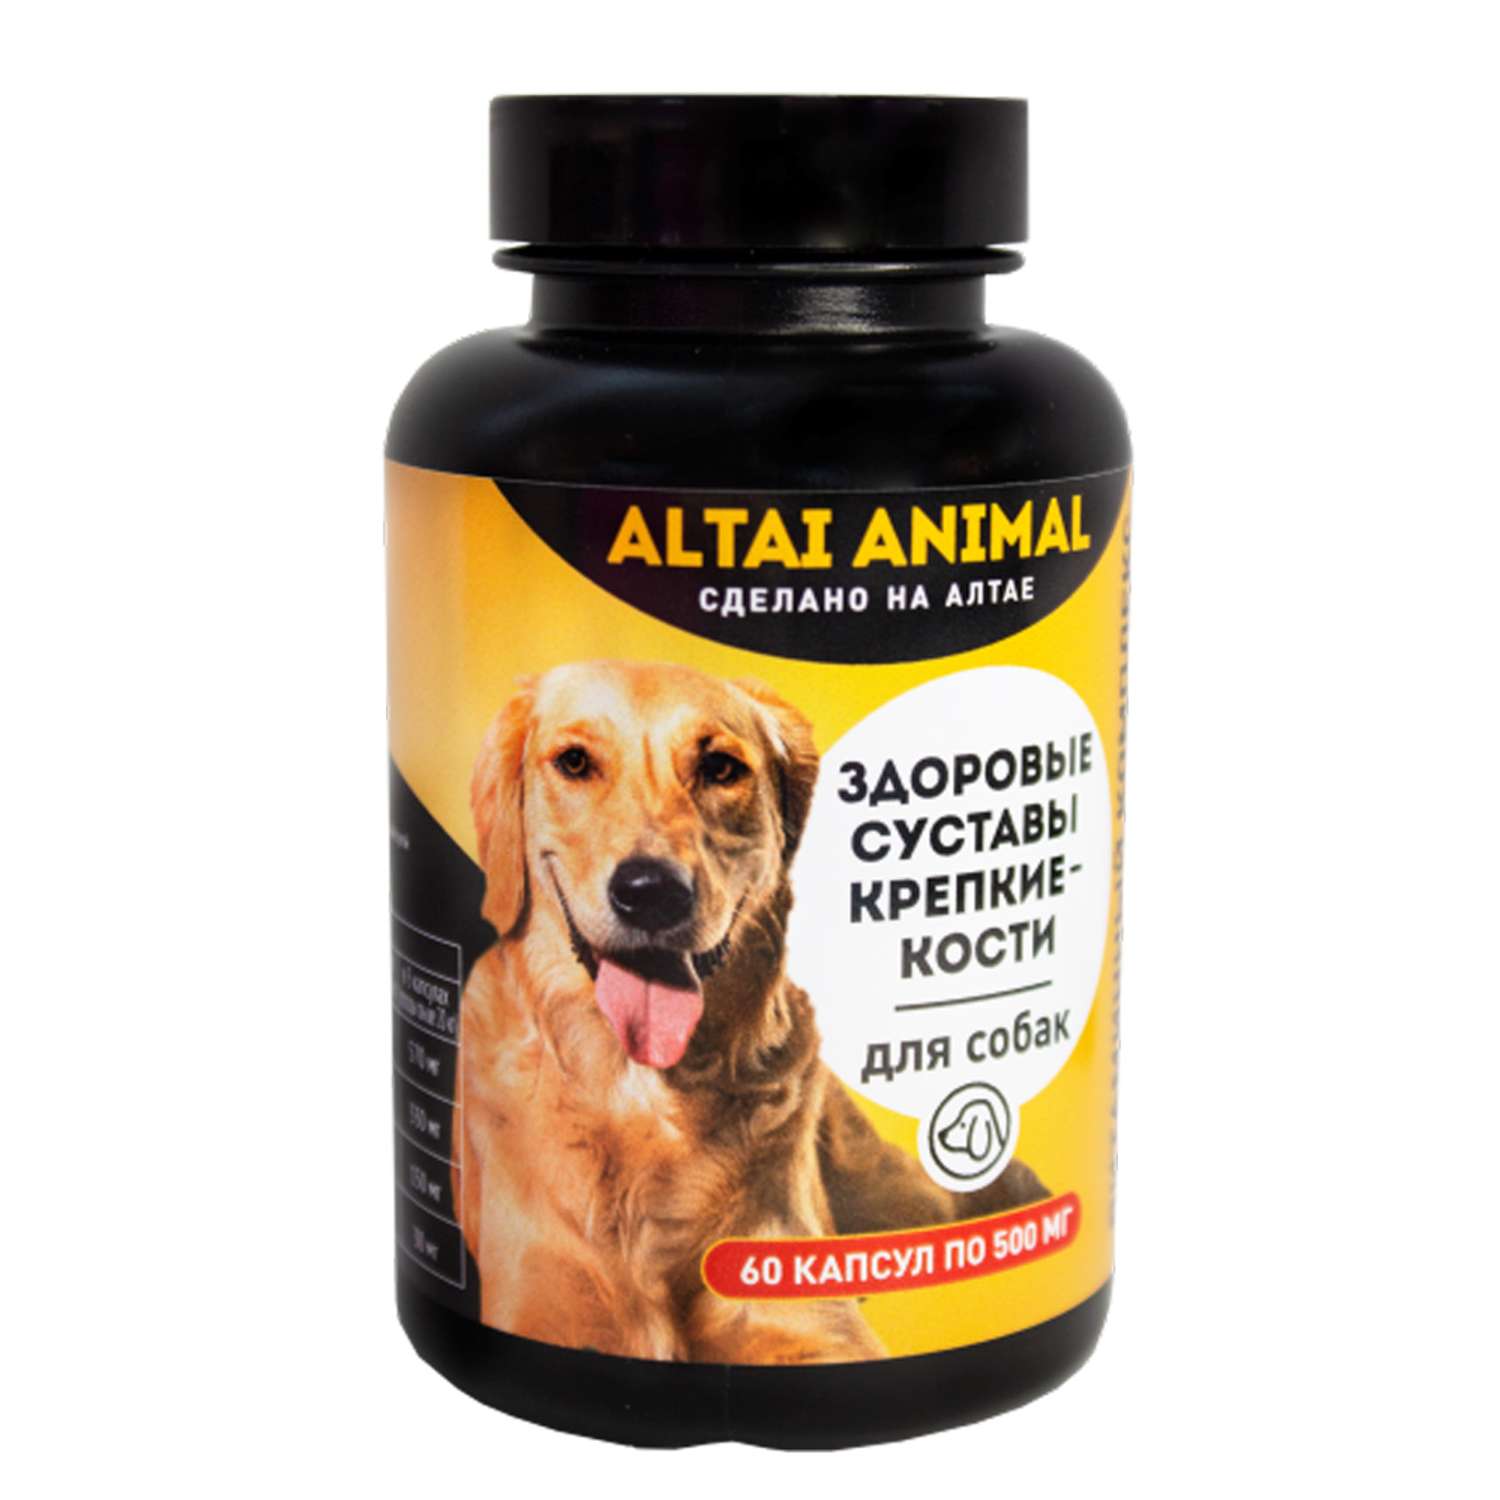 Витаминный комплекс ALTAI ANIMAL для собак Здоровые суставы крепкие кости - фото 1